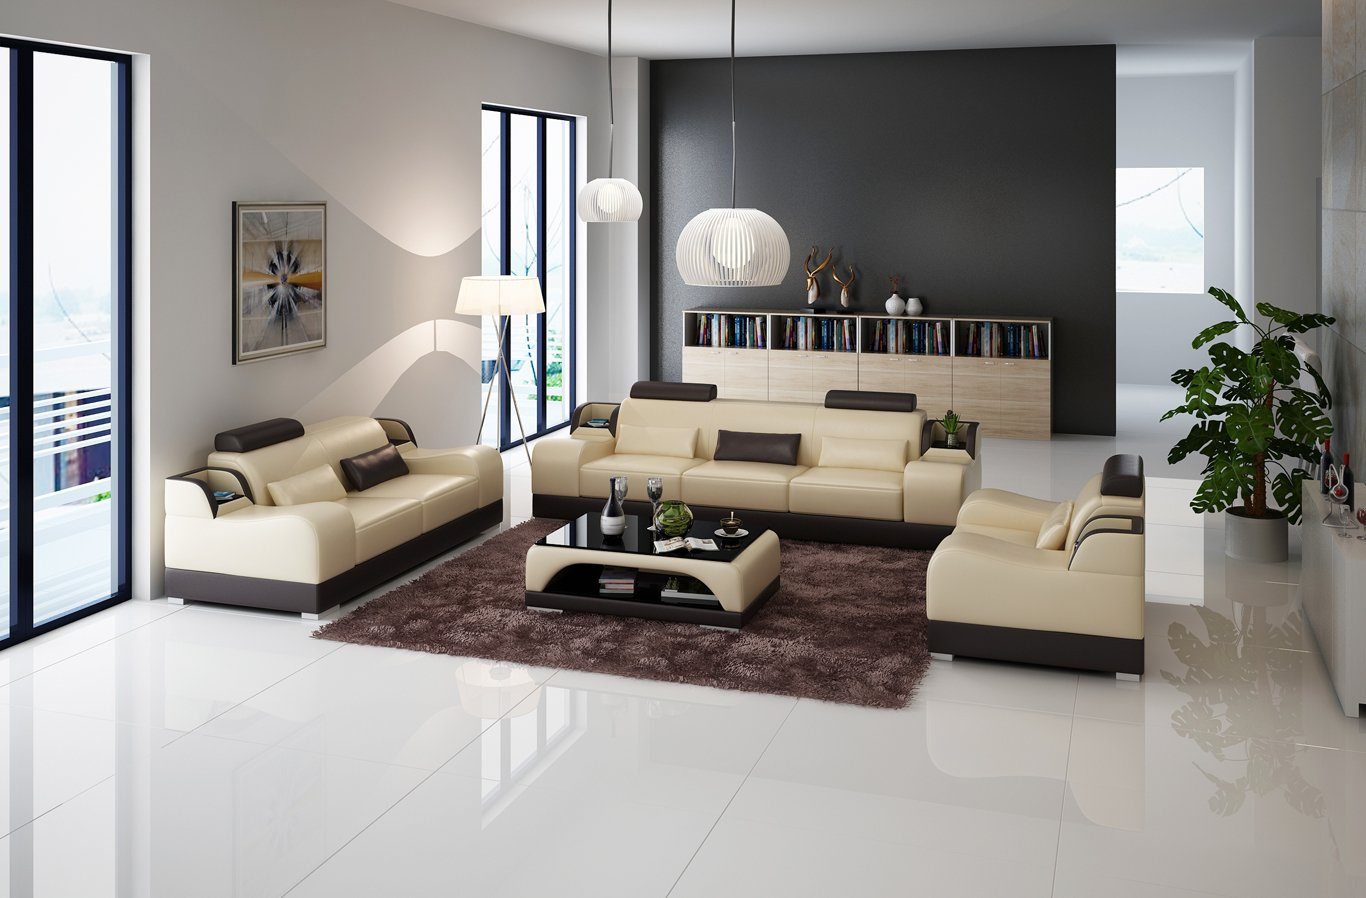 3+2+2 JVmoebel Modern Design Sofa Europe Beige/Braun Couch Made Sofa Sitzer Set Couchen Luxus Polster Neu, in